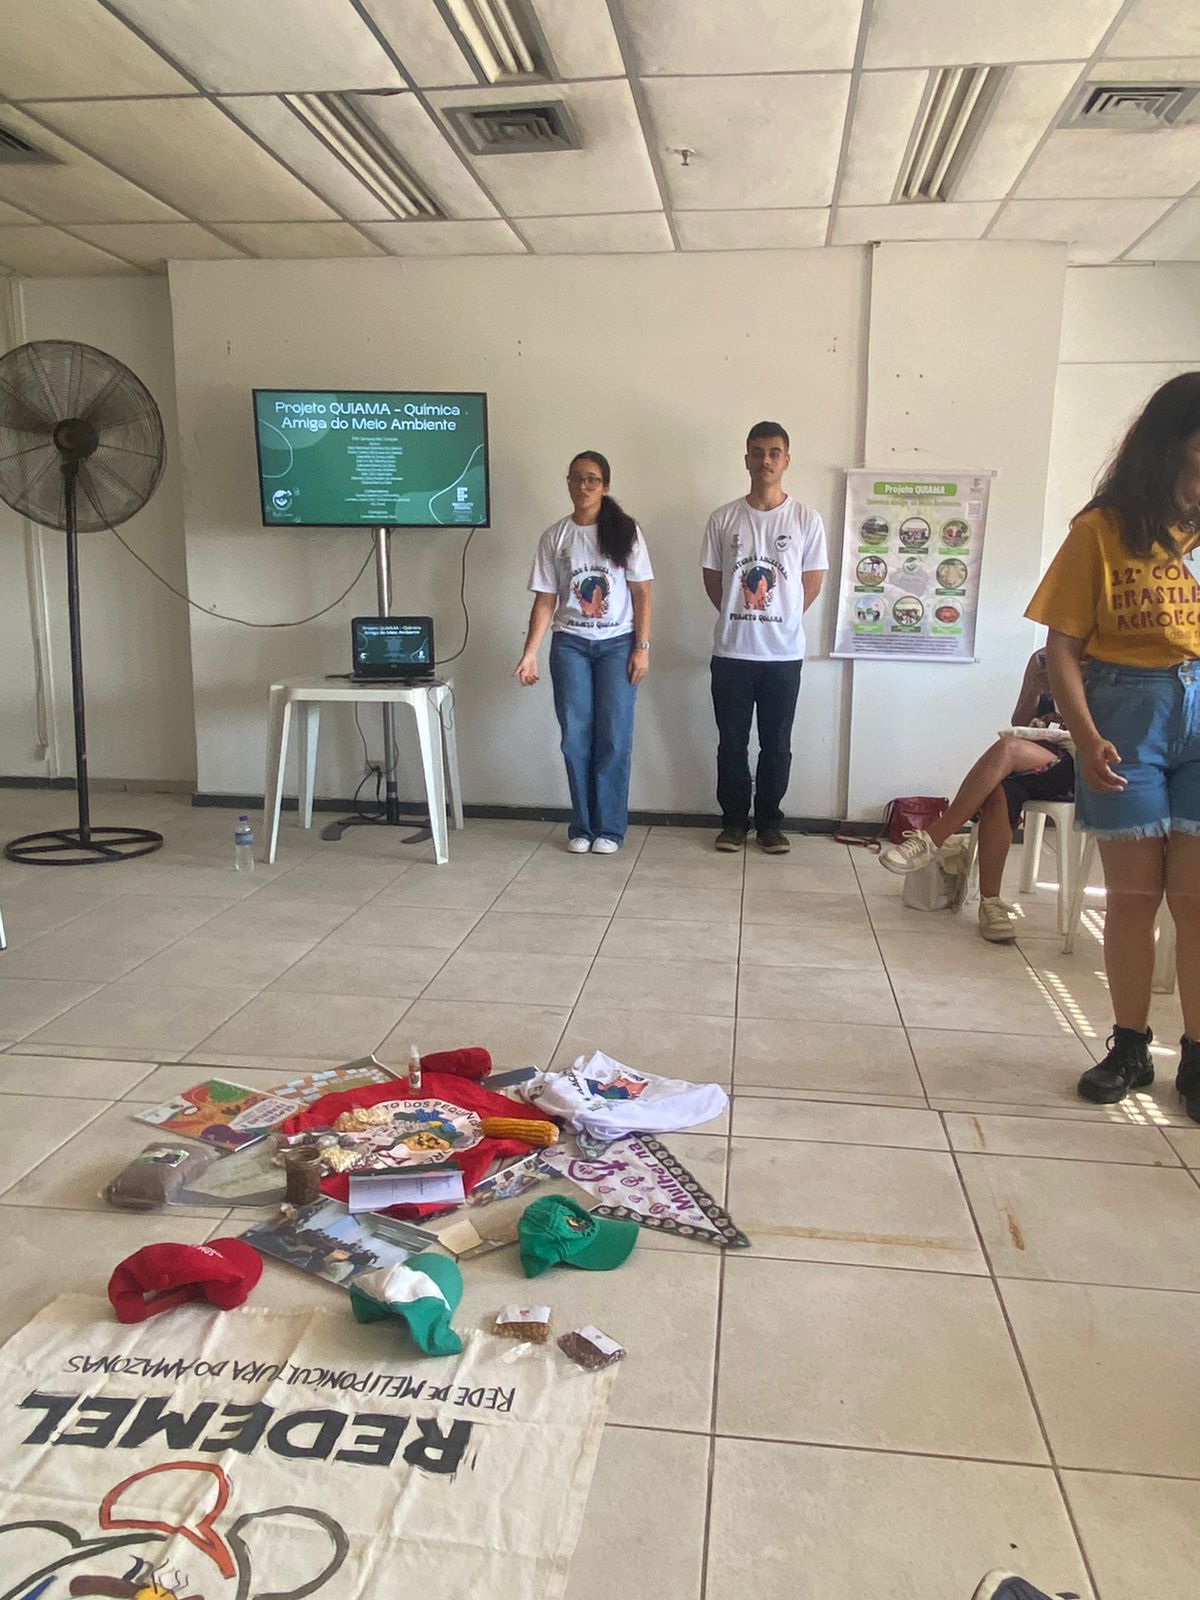 estudantes do campus apresentando projeto no congresso em uma sala com objetos no chão